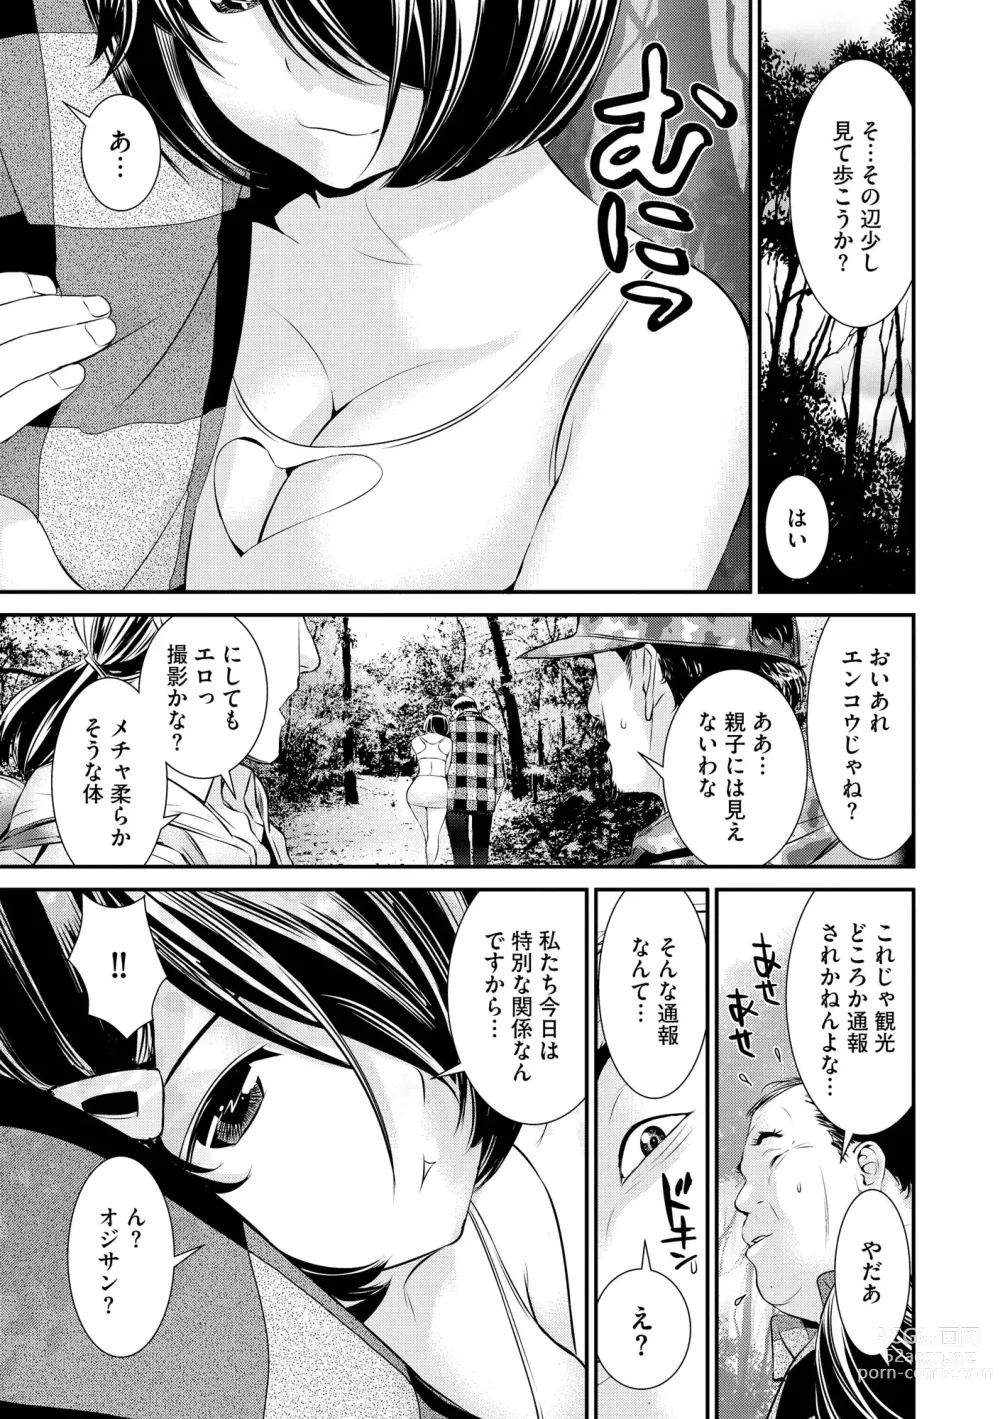 Page 29 of manga Pakotteko? Gyaruna musuko no kanojo wa douyara watashi no dekachin ga ki ni naru you de…